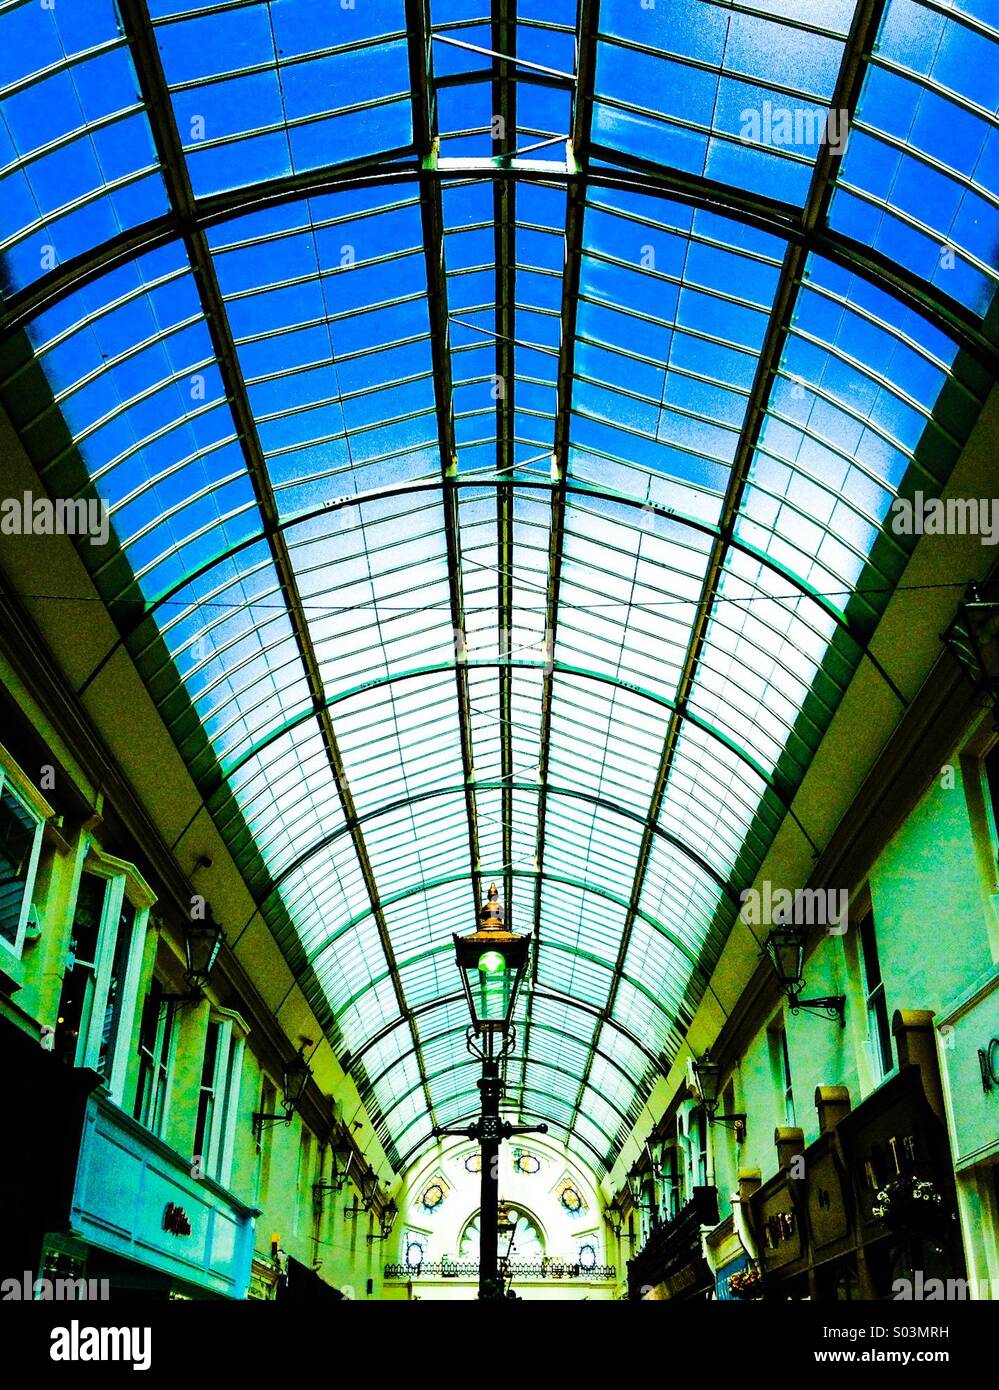 Eine Innenansicht des Viktorianischen Arcade in die Westbourne, Bournemouth, zeigt die symmetrischen Fassaden der Klasse ll Struktur aufgelistet. Stockfoto